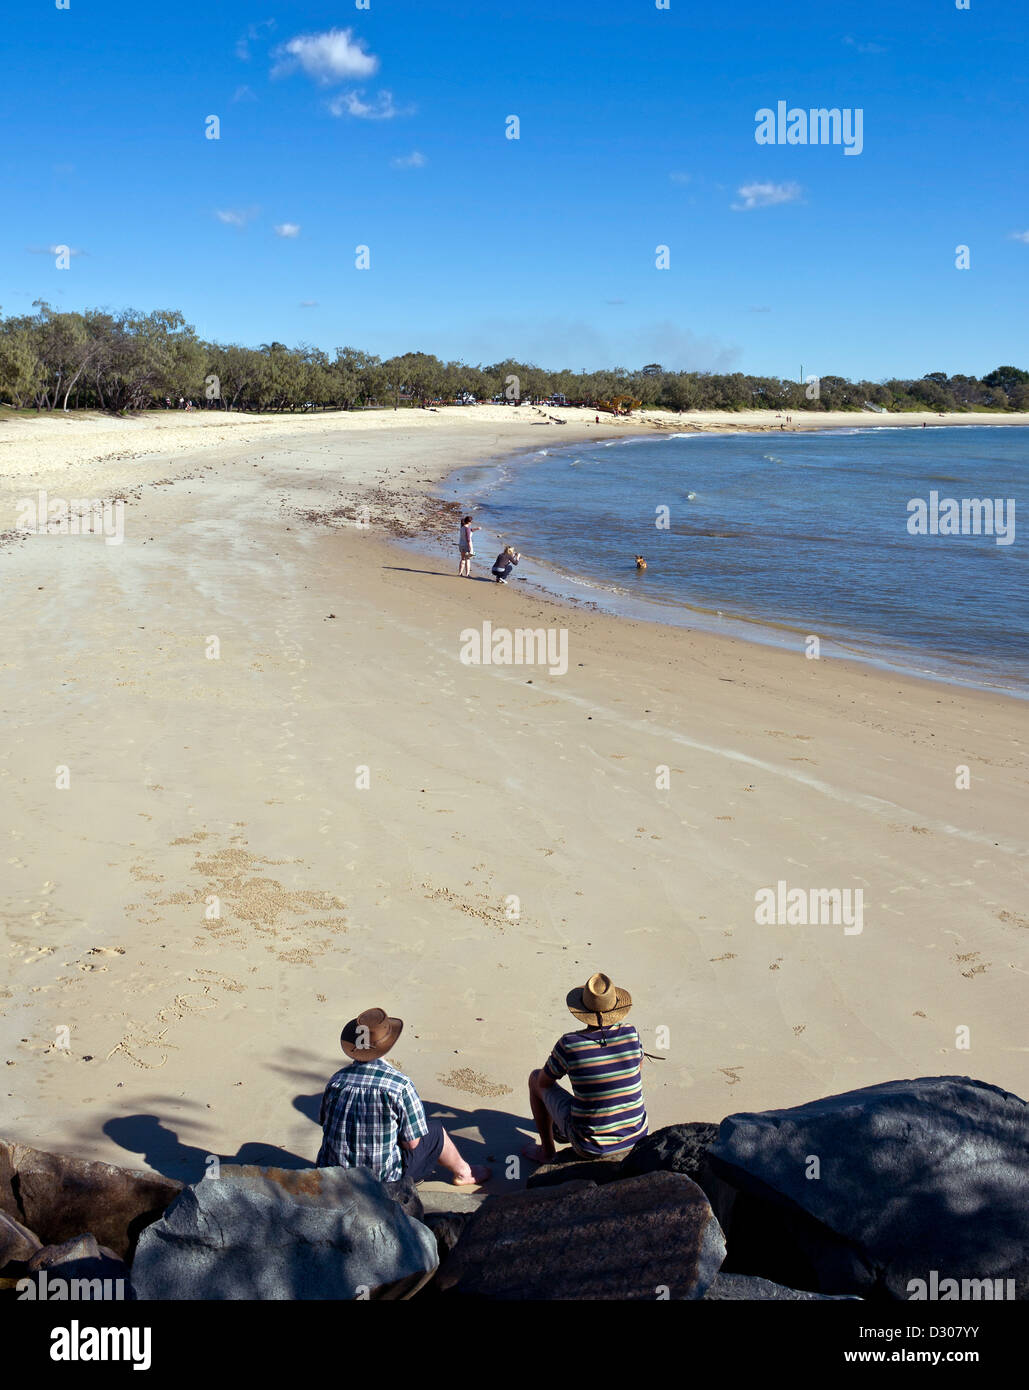 La Sunshine Coast de Queensland, Australia - gente sentada en la playa de Mooloolaba Foto de stock